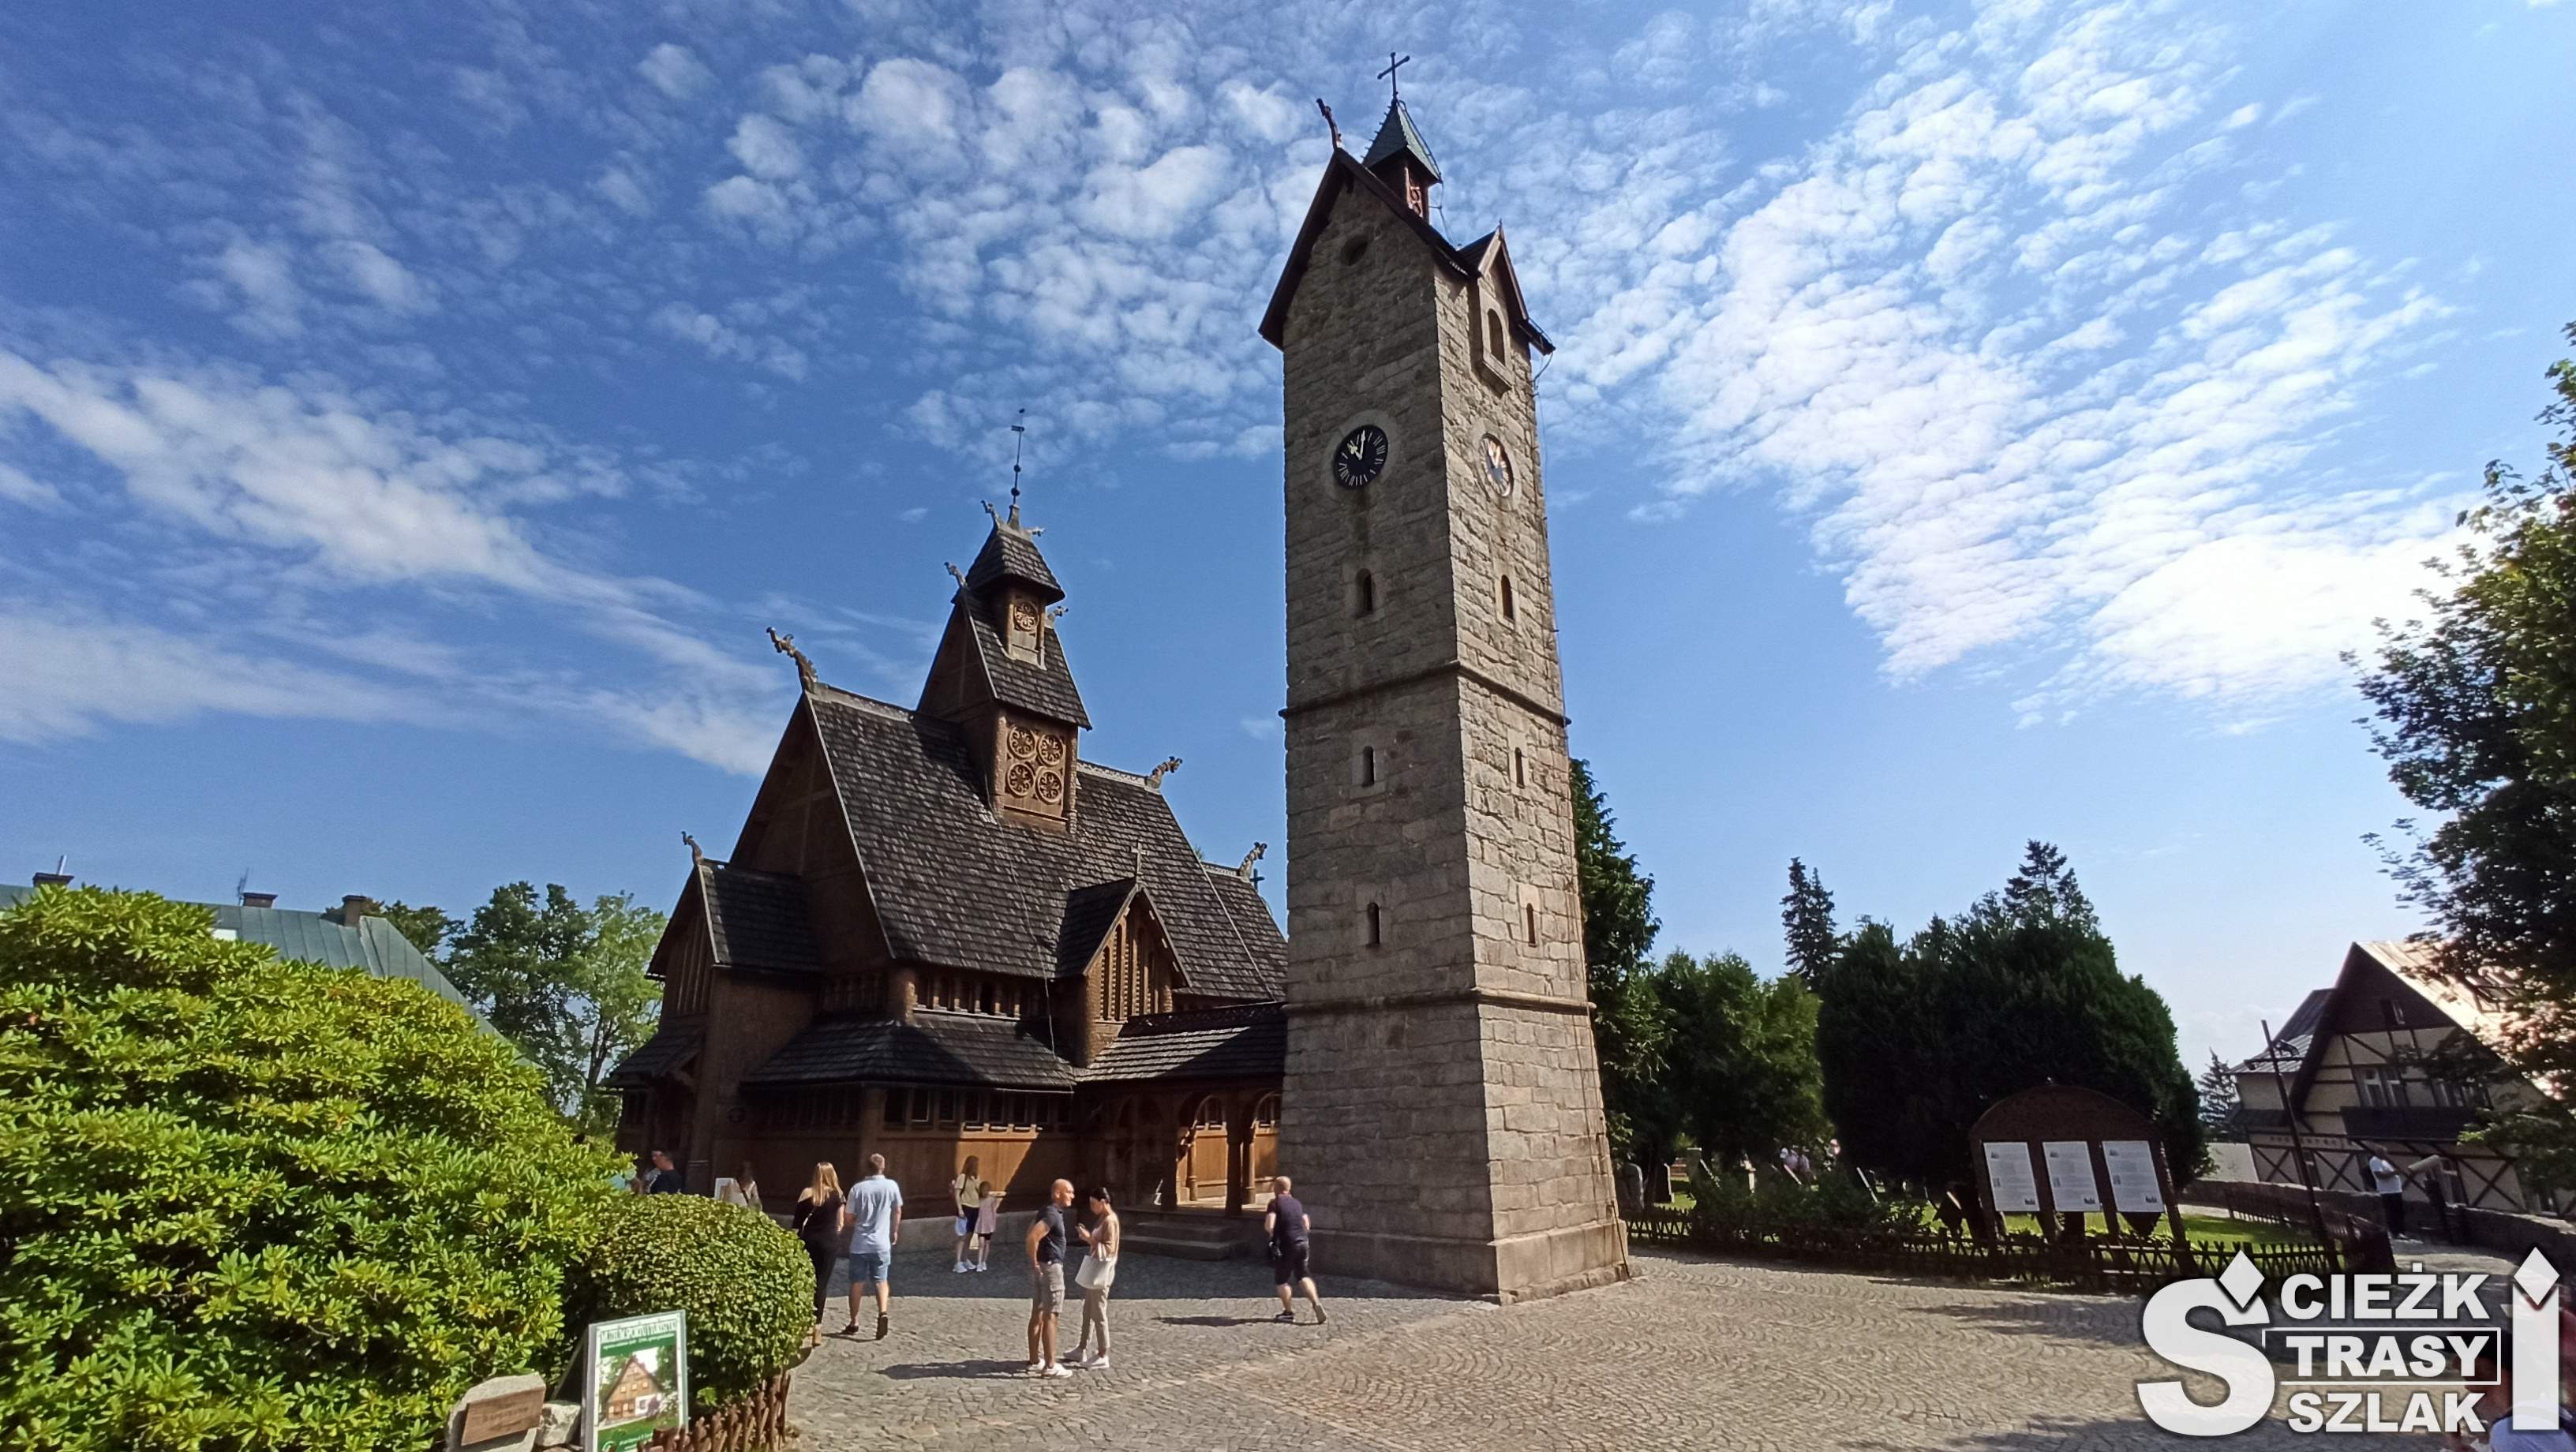 Świątynia Wang - Kościół drewniany z krużgankami za wysoką dzwonnicą Wikingowie wzbogacili kościoły ewangelickie swoim zabytkiem